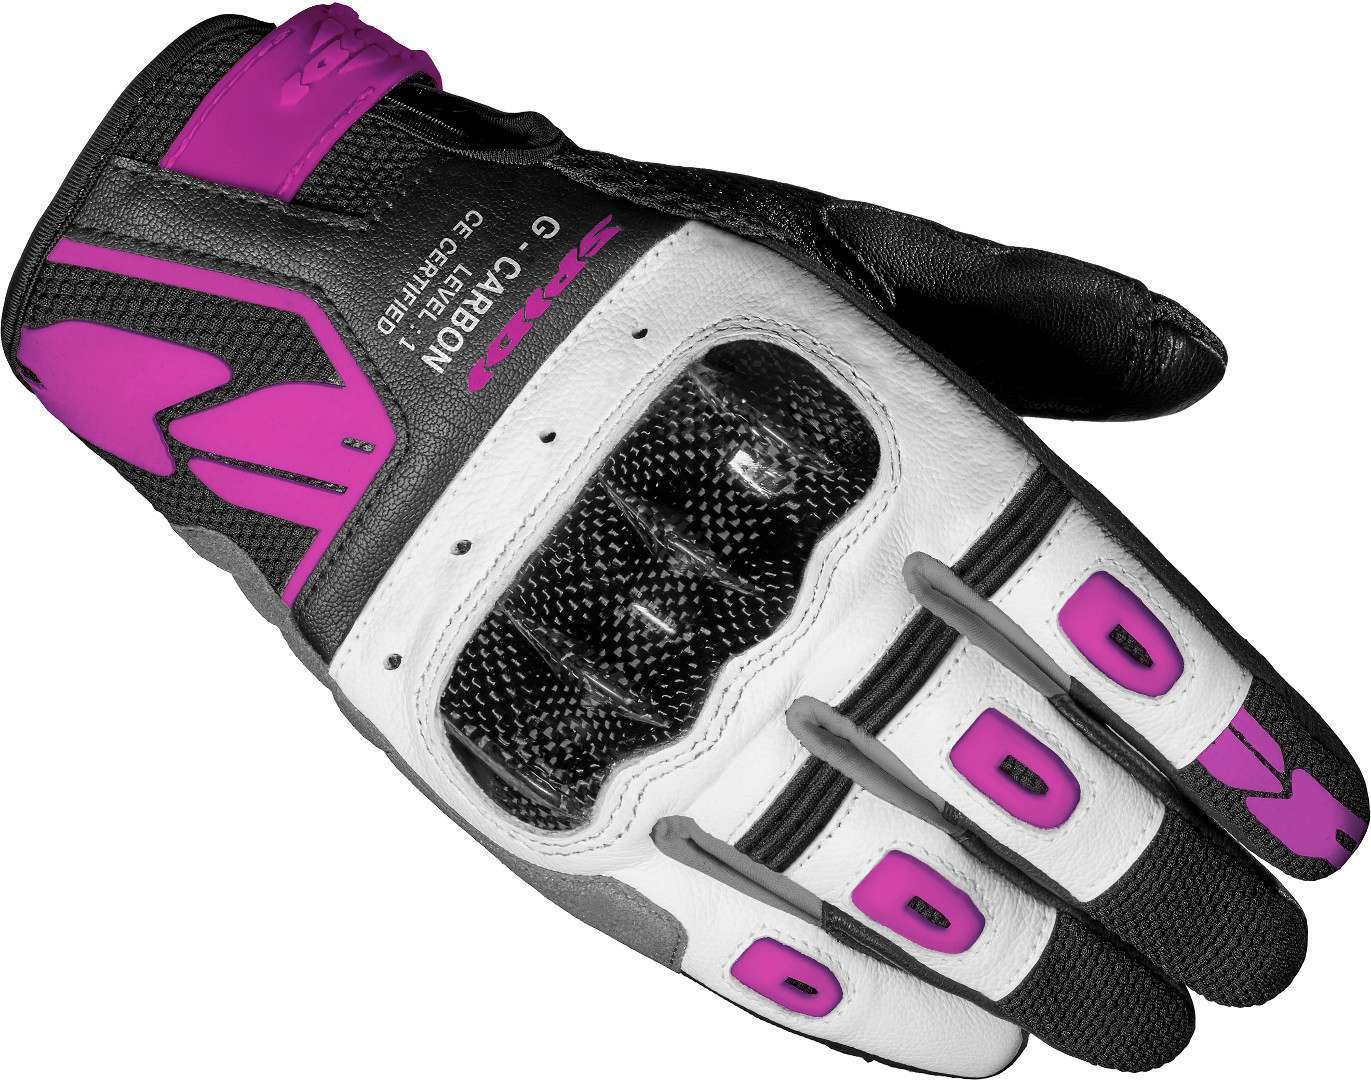 Spidi G-Carbon Damen Motorrad Handschuhe L Schwarz Weiss Pink